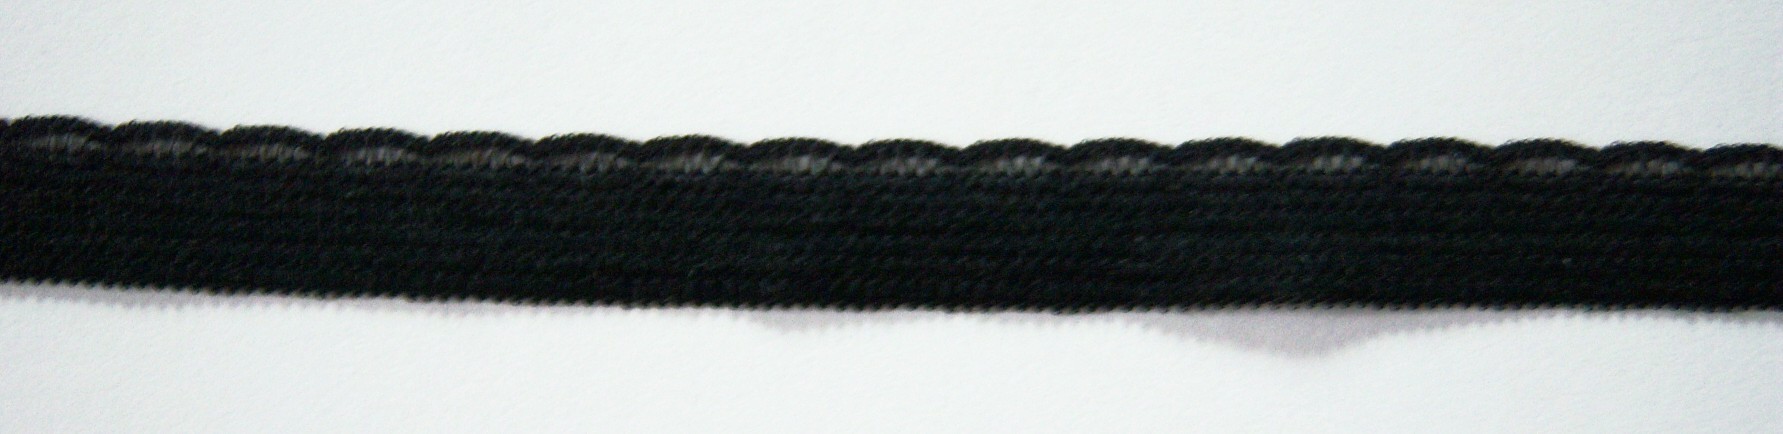 Black 1/2" Nylon Lace